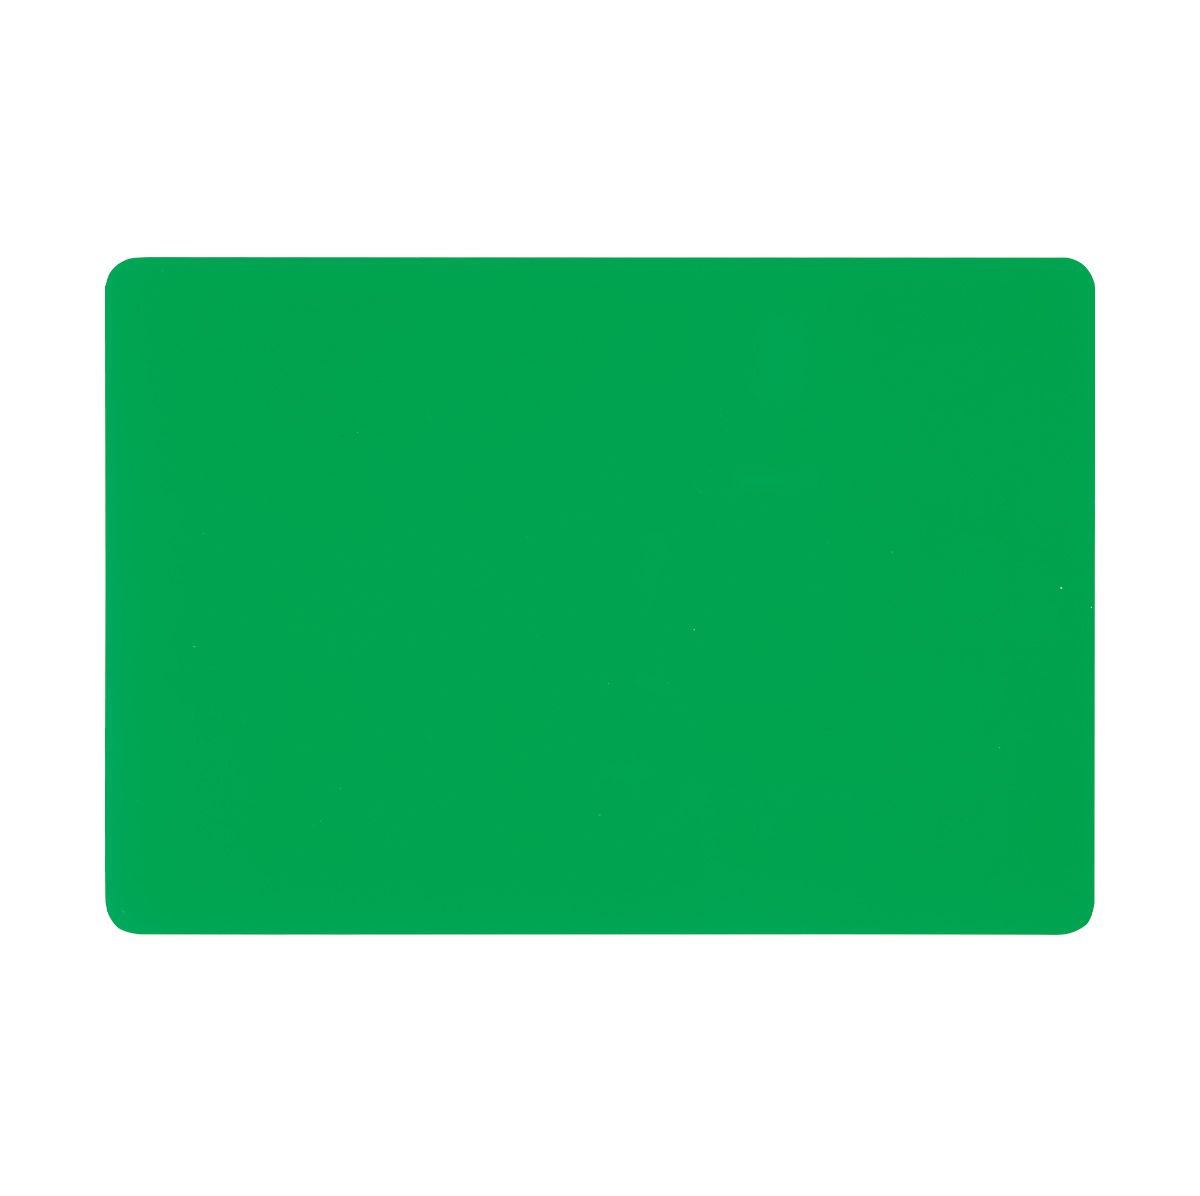 デスクマットシングル　UV　3S DMN-3S 既製品 シャチハタ シヤチハタ しゃちはた Shachihata オフィス ビジネス デスク用品 マット 事務用品 総務 環境 会社 業務 作業 仕事 職場 学校 グリーン 緑 透明 転写防止加工